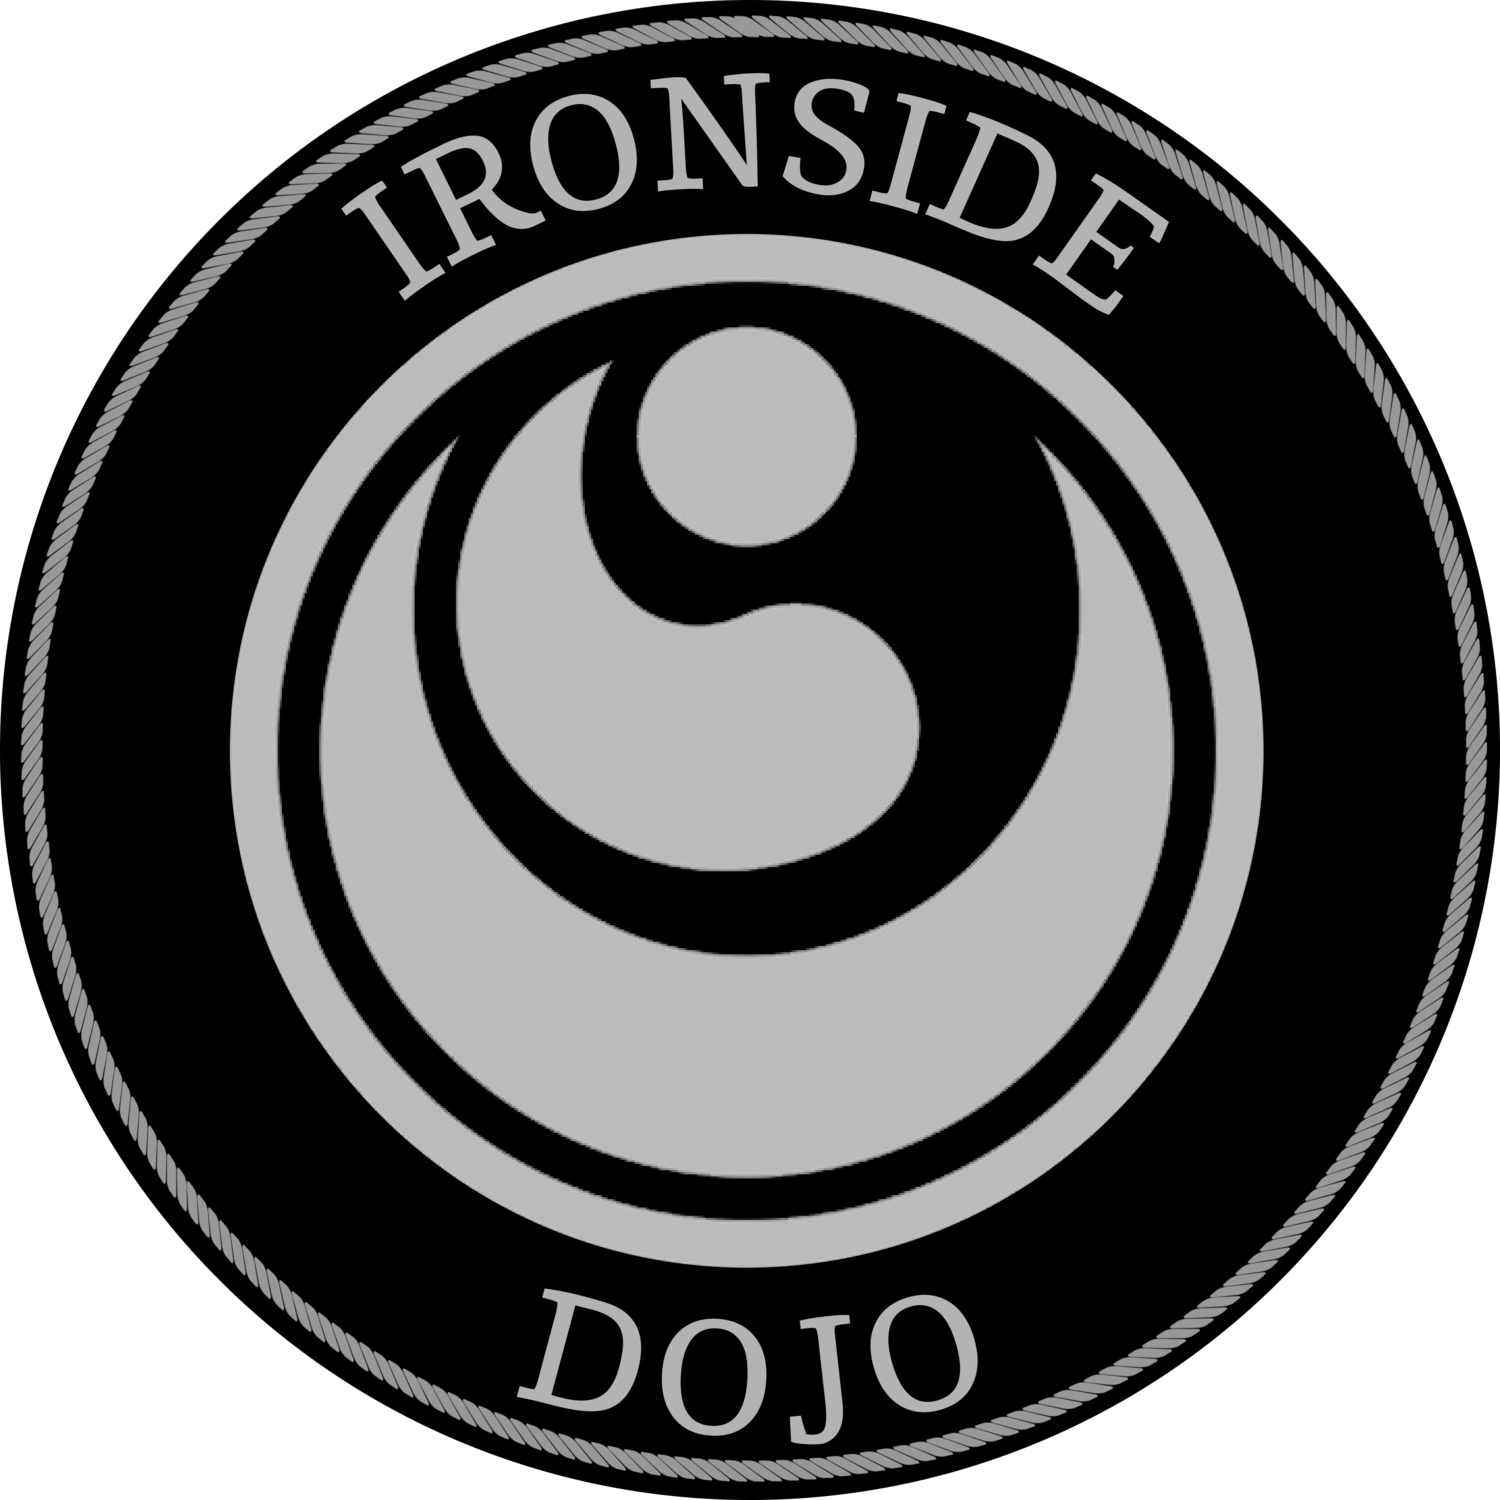 Shinkyokushin Ironside Dojo